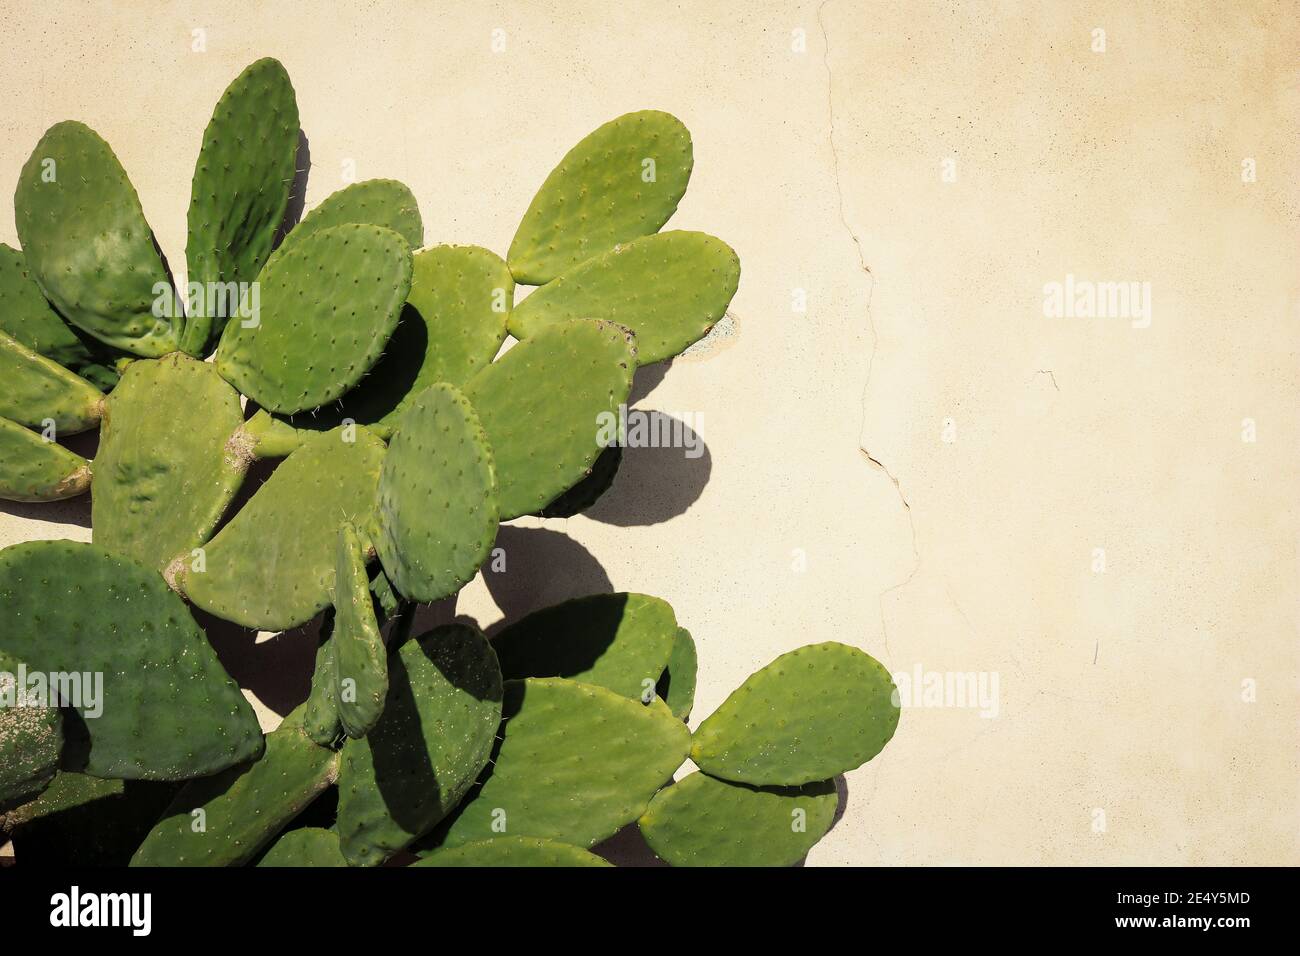 Hintergrundtextur eines Kaktus aus stacheligen Birnen davor Beigefarbene Wand Stockfoto